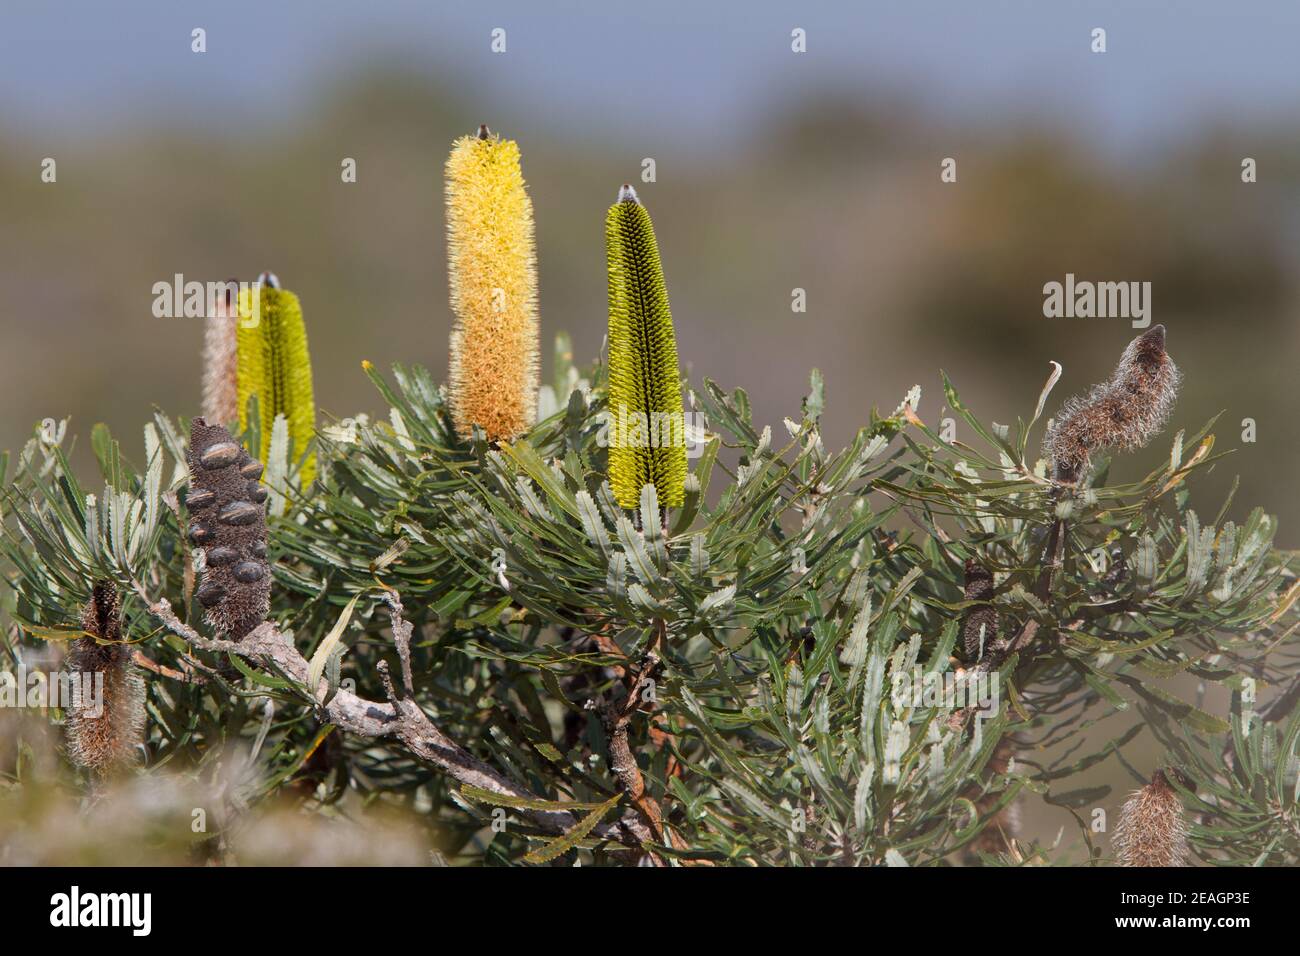 Varie fasi di fiori attenuata Banksia al campo Bush di Tozers Australia occidentale Foto Stock